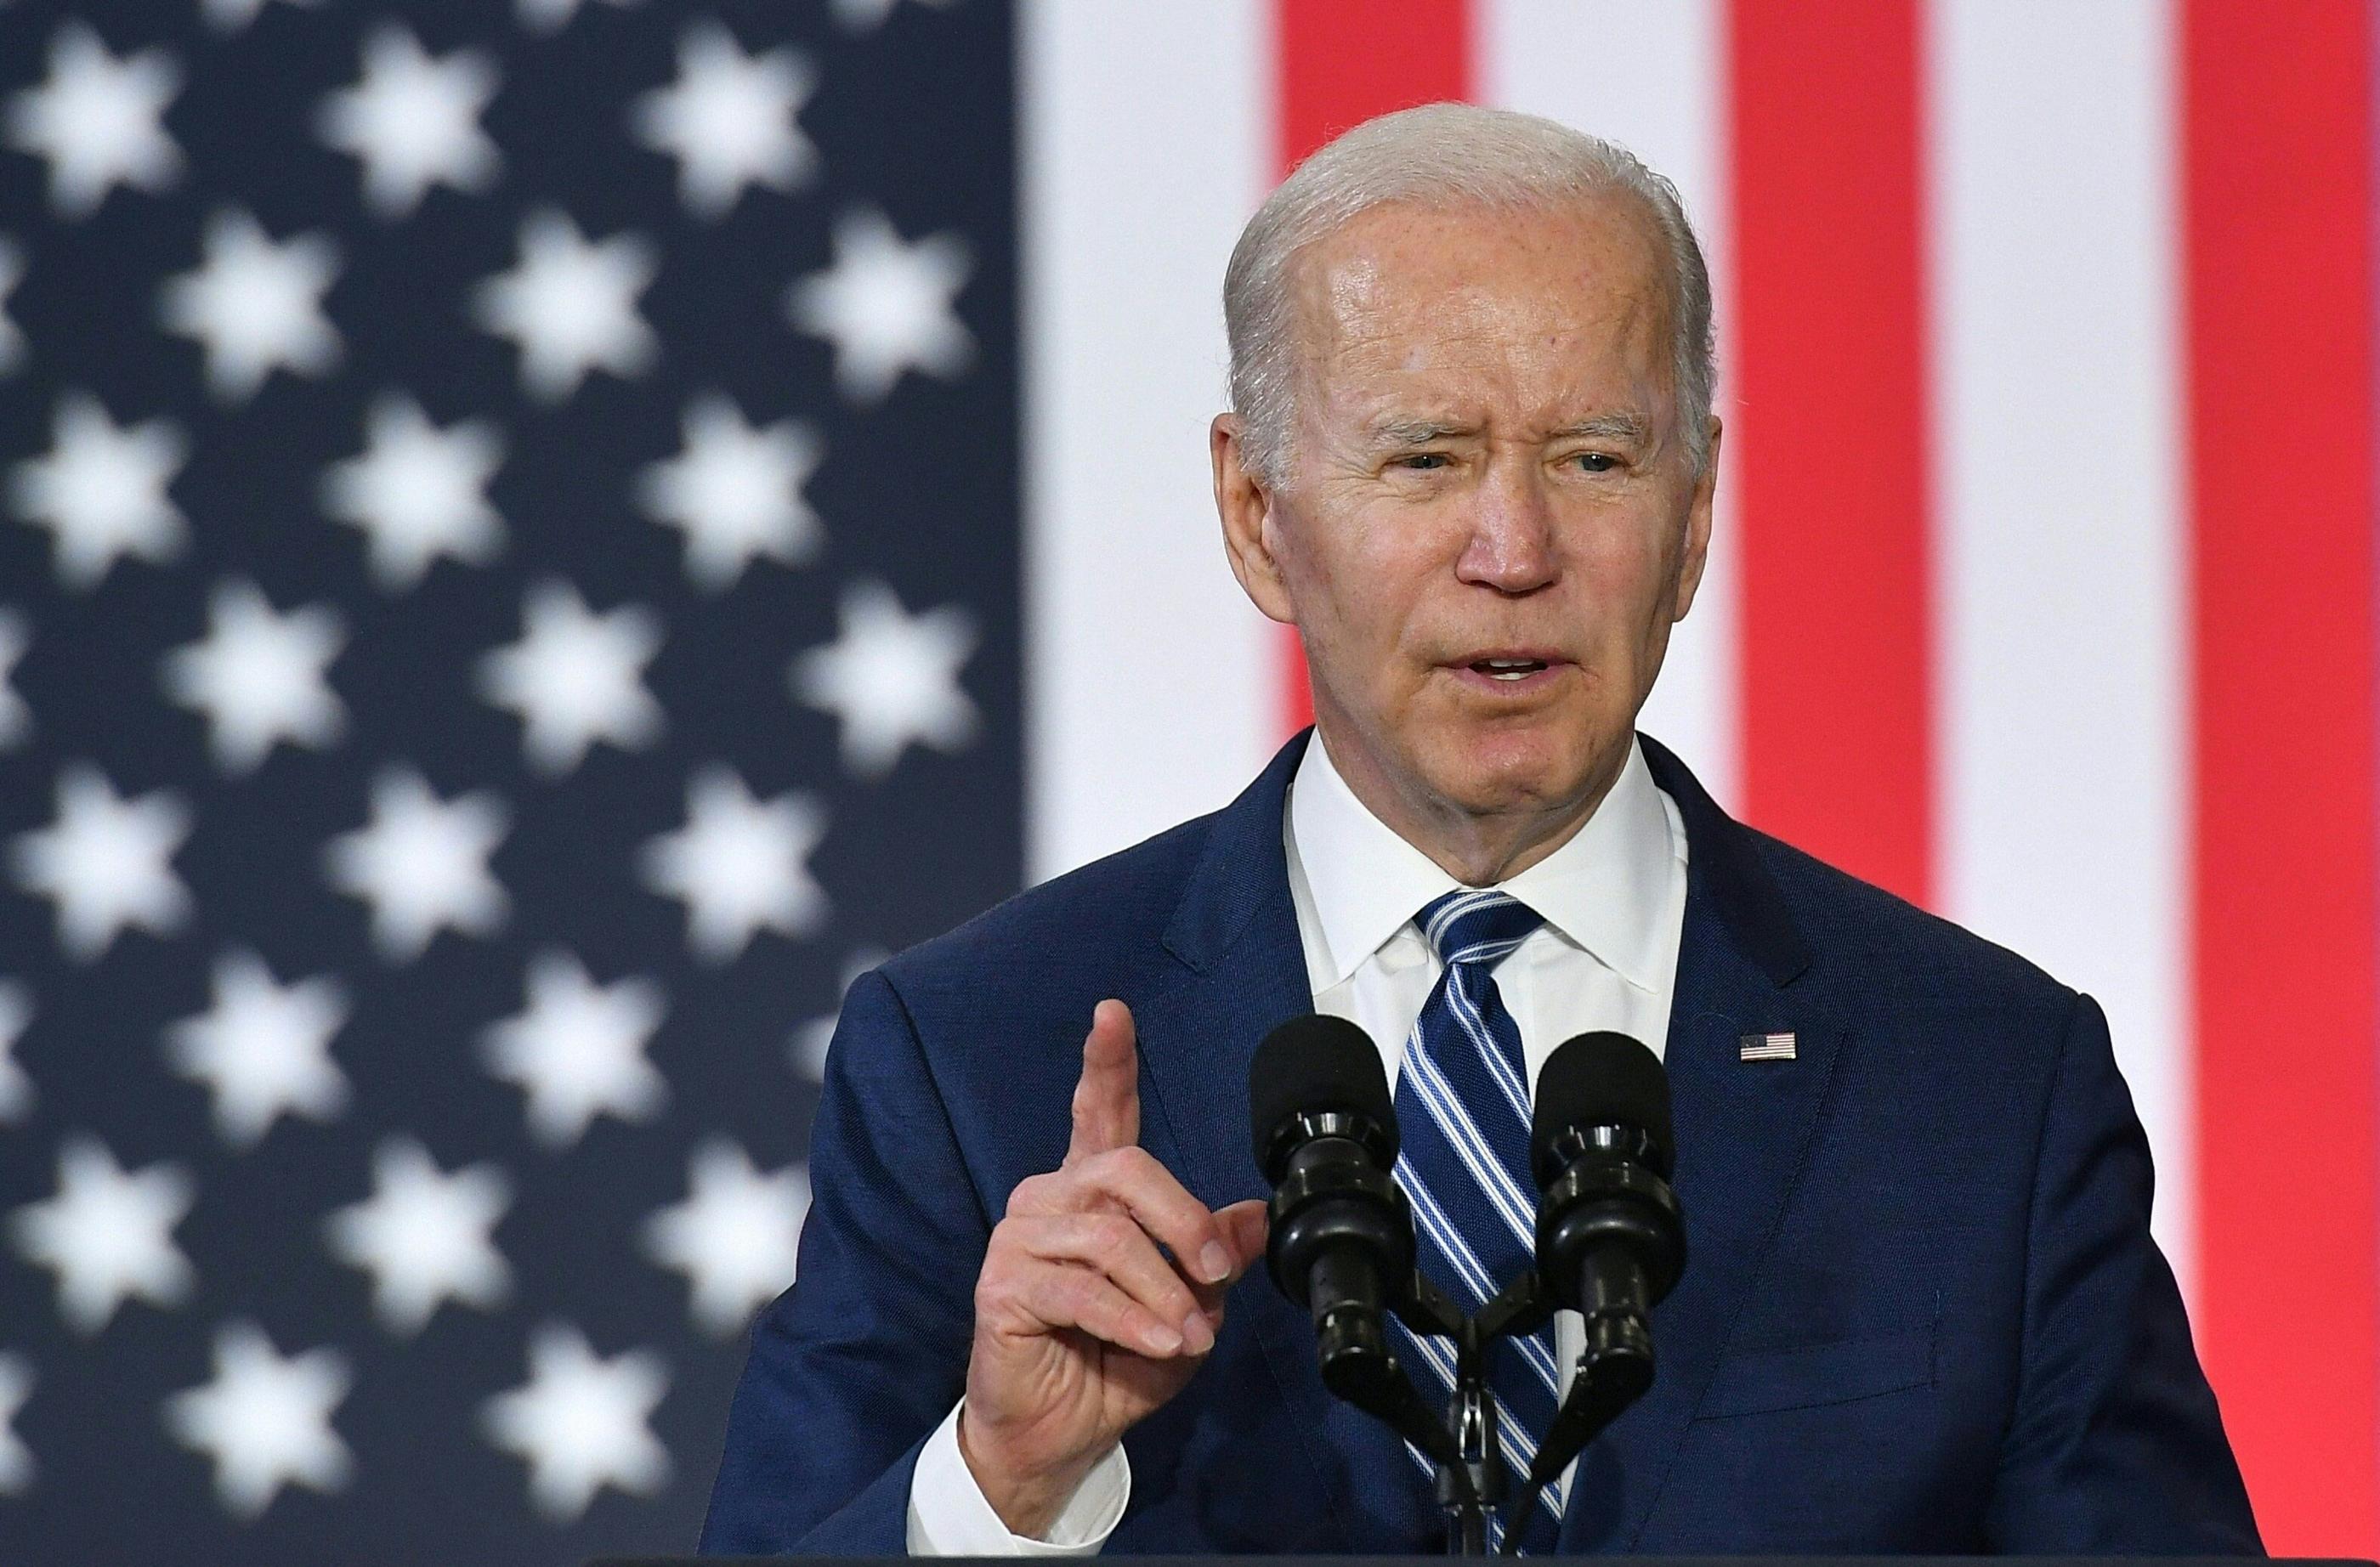 Pour gagner la présidentielle, Joe Biden aura besoin de convaincre sur les réussites économiques réalisées au cours de son mandat. AFP/Mandel Ngan